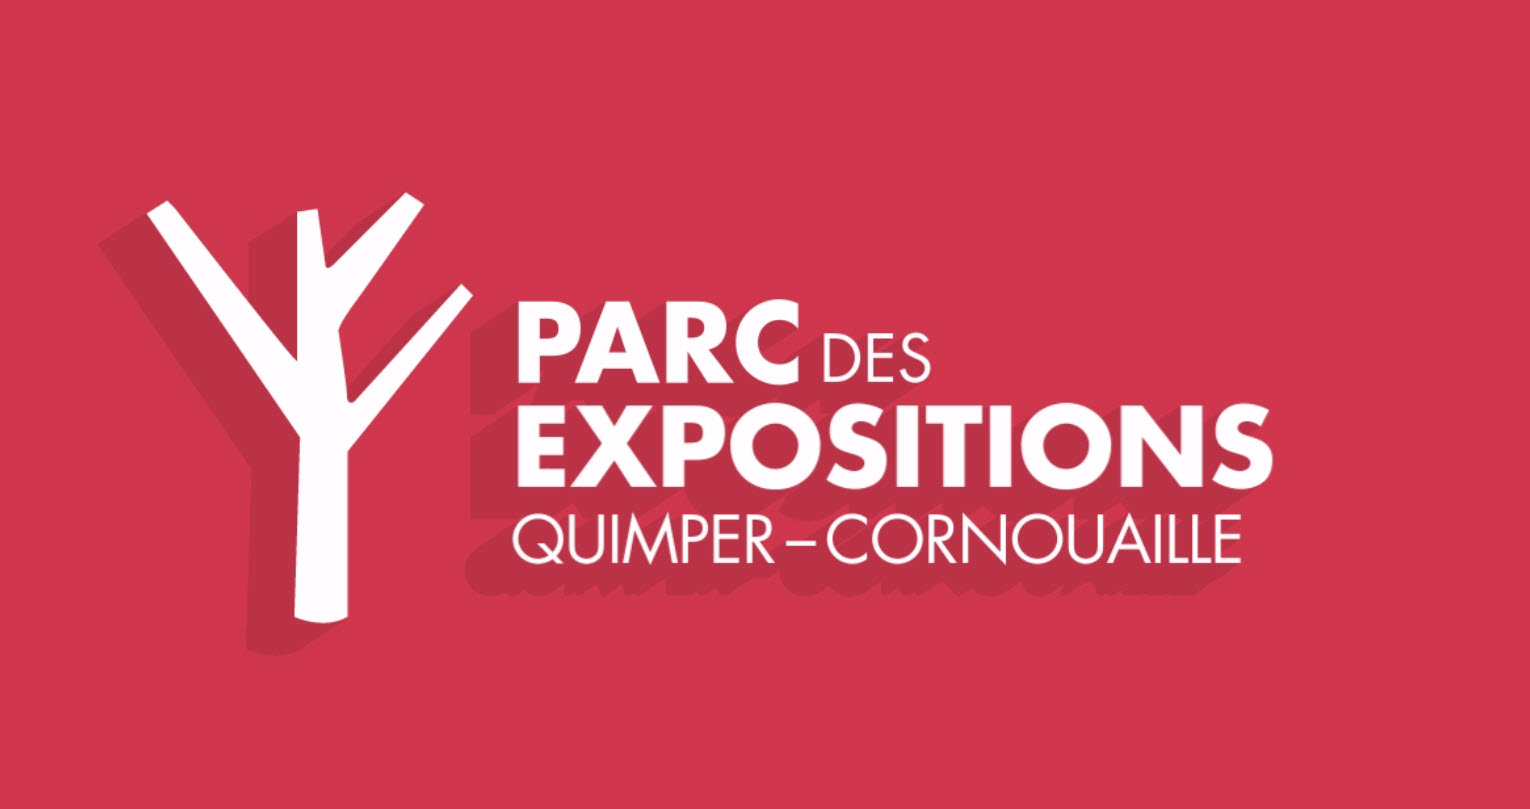 Portes ouvertes au Parc des expositions Quimper-Cornouaille le 12 avril ! 